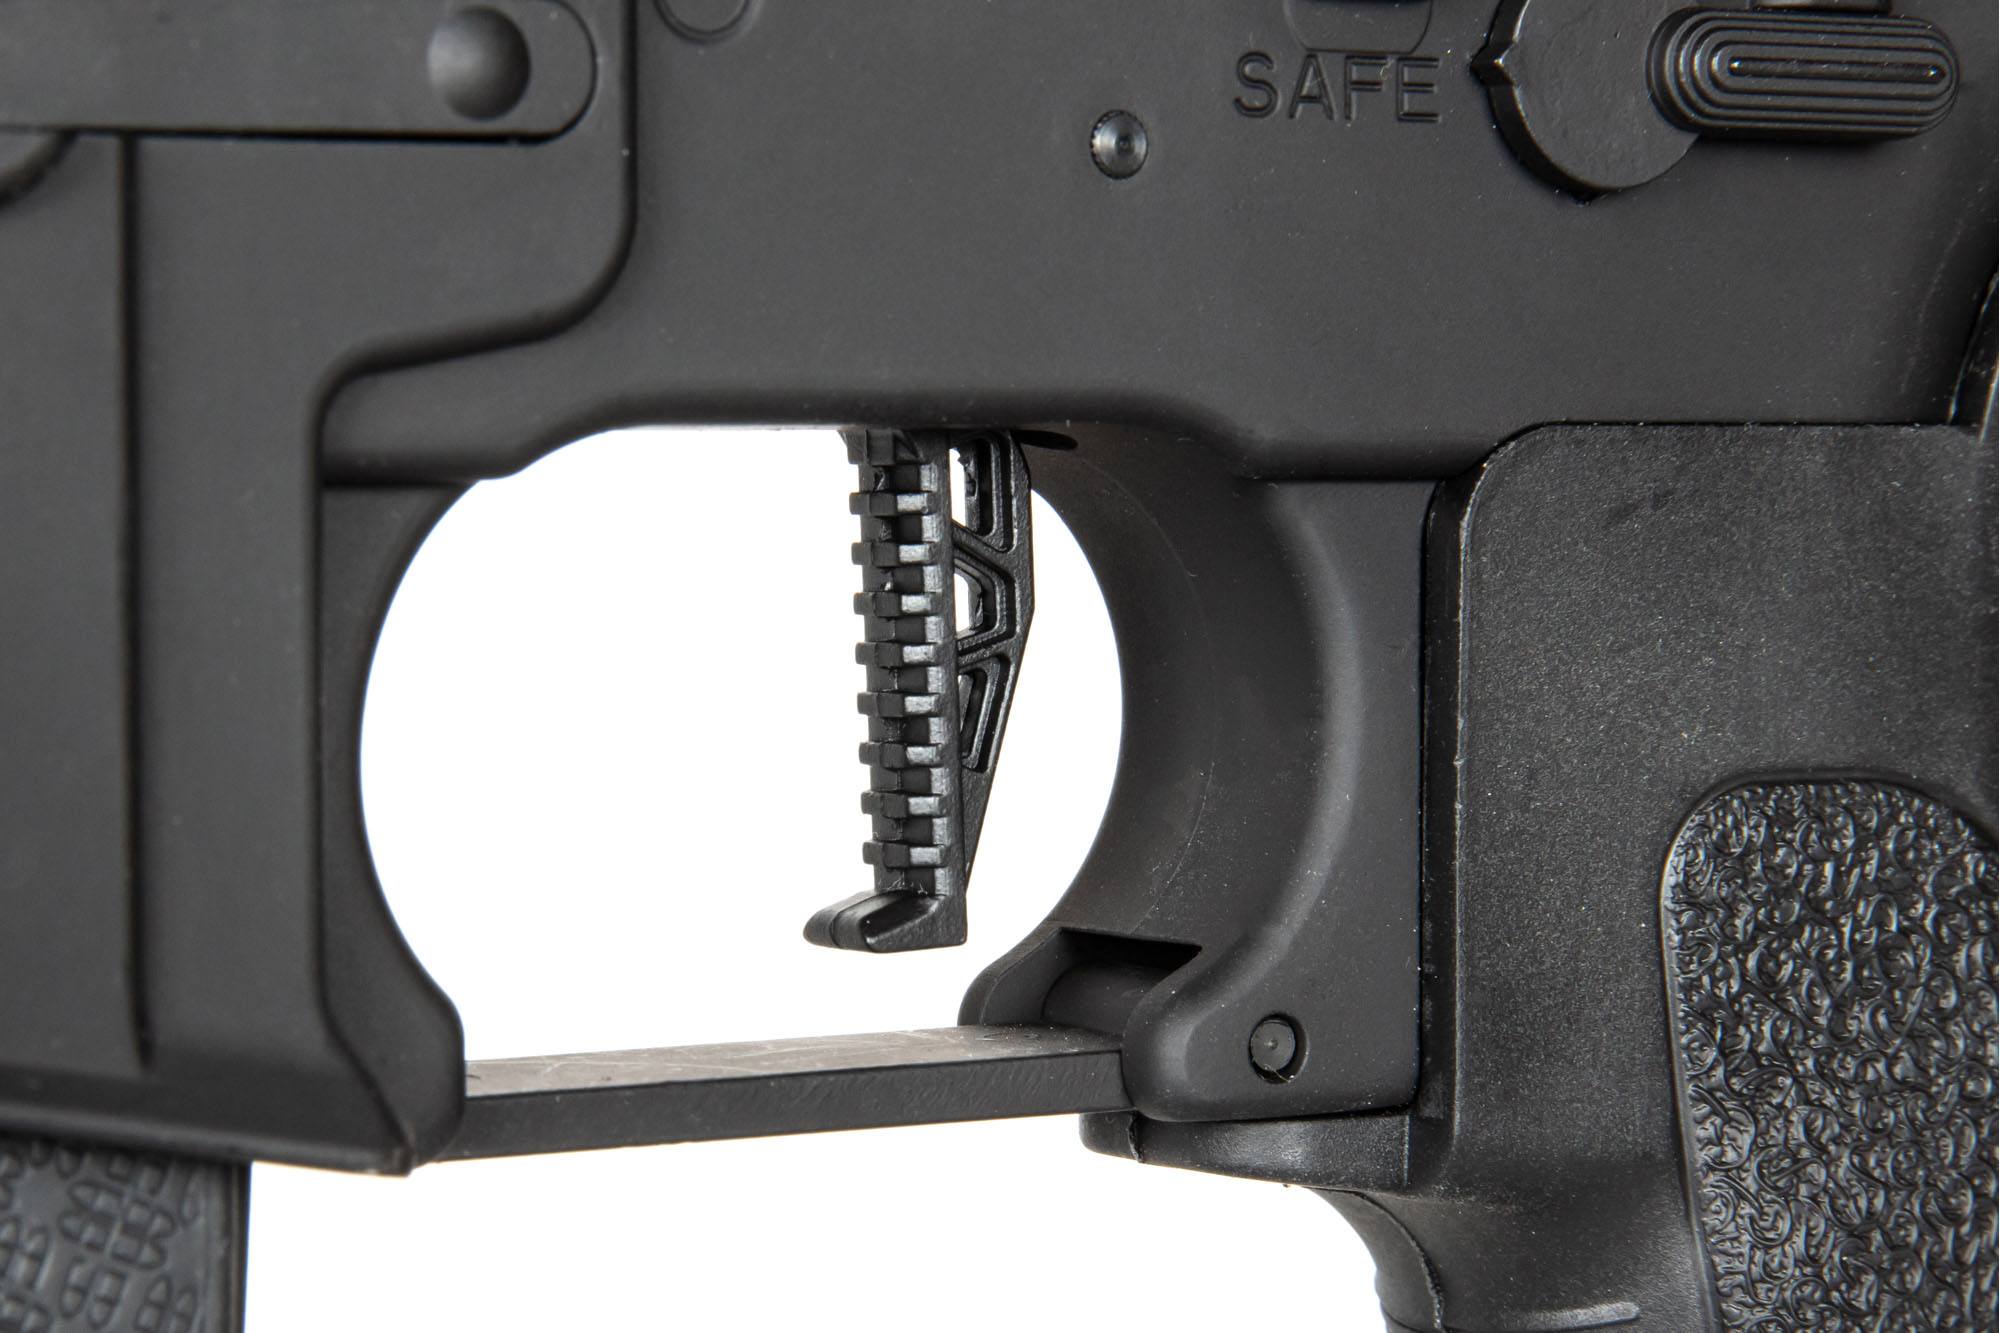 RRA SA-E04 EDGE 2.0™ Carbine Replica - Black